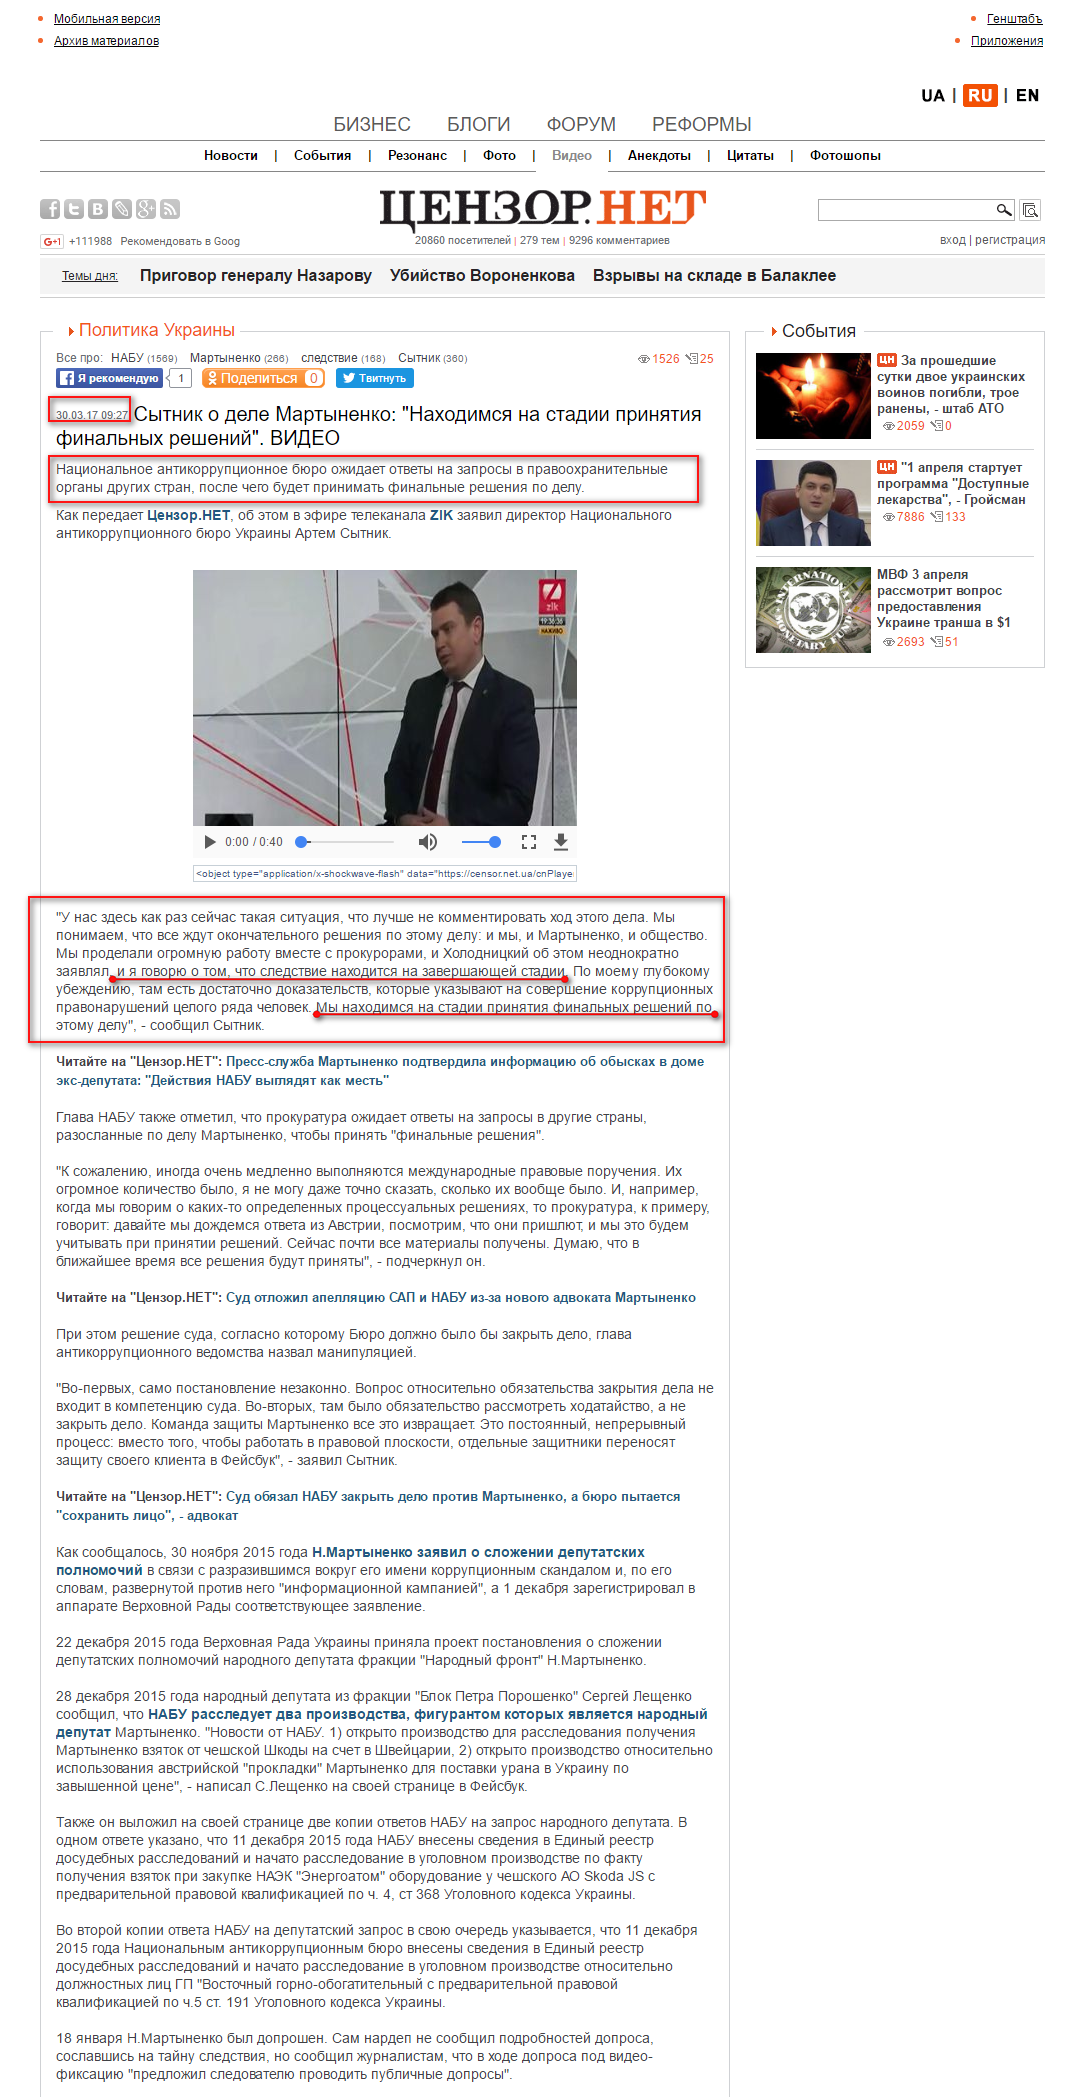 http://censor.net.ua/video_news/434125/sytnik_o_dele_martynenko_nahodimsya_na_stadii_prinyatiya_finalnyh_resheniyi_video